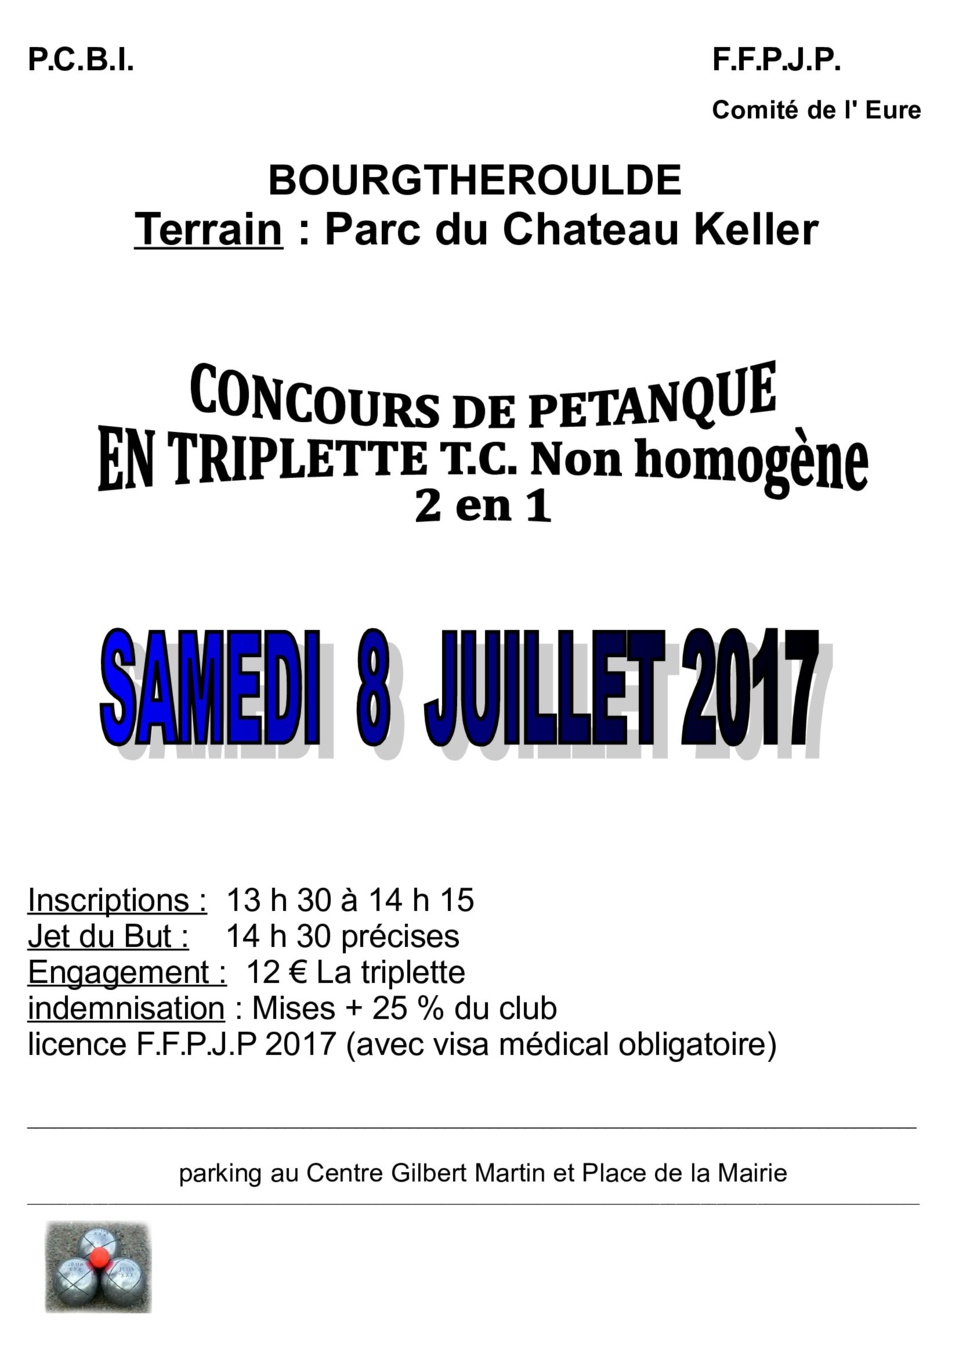 Concours le 8 juillet à Bourgtheroulde